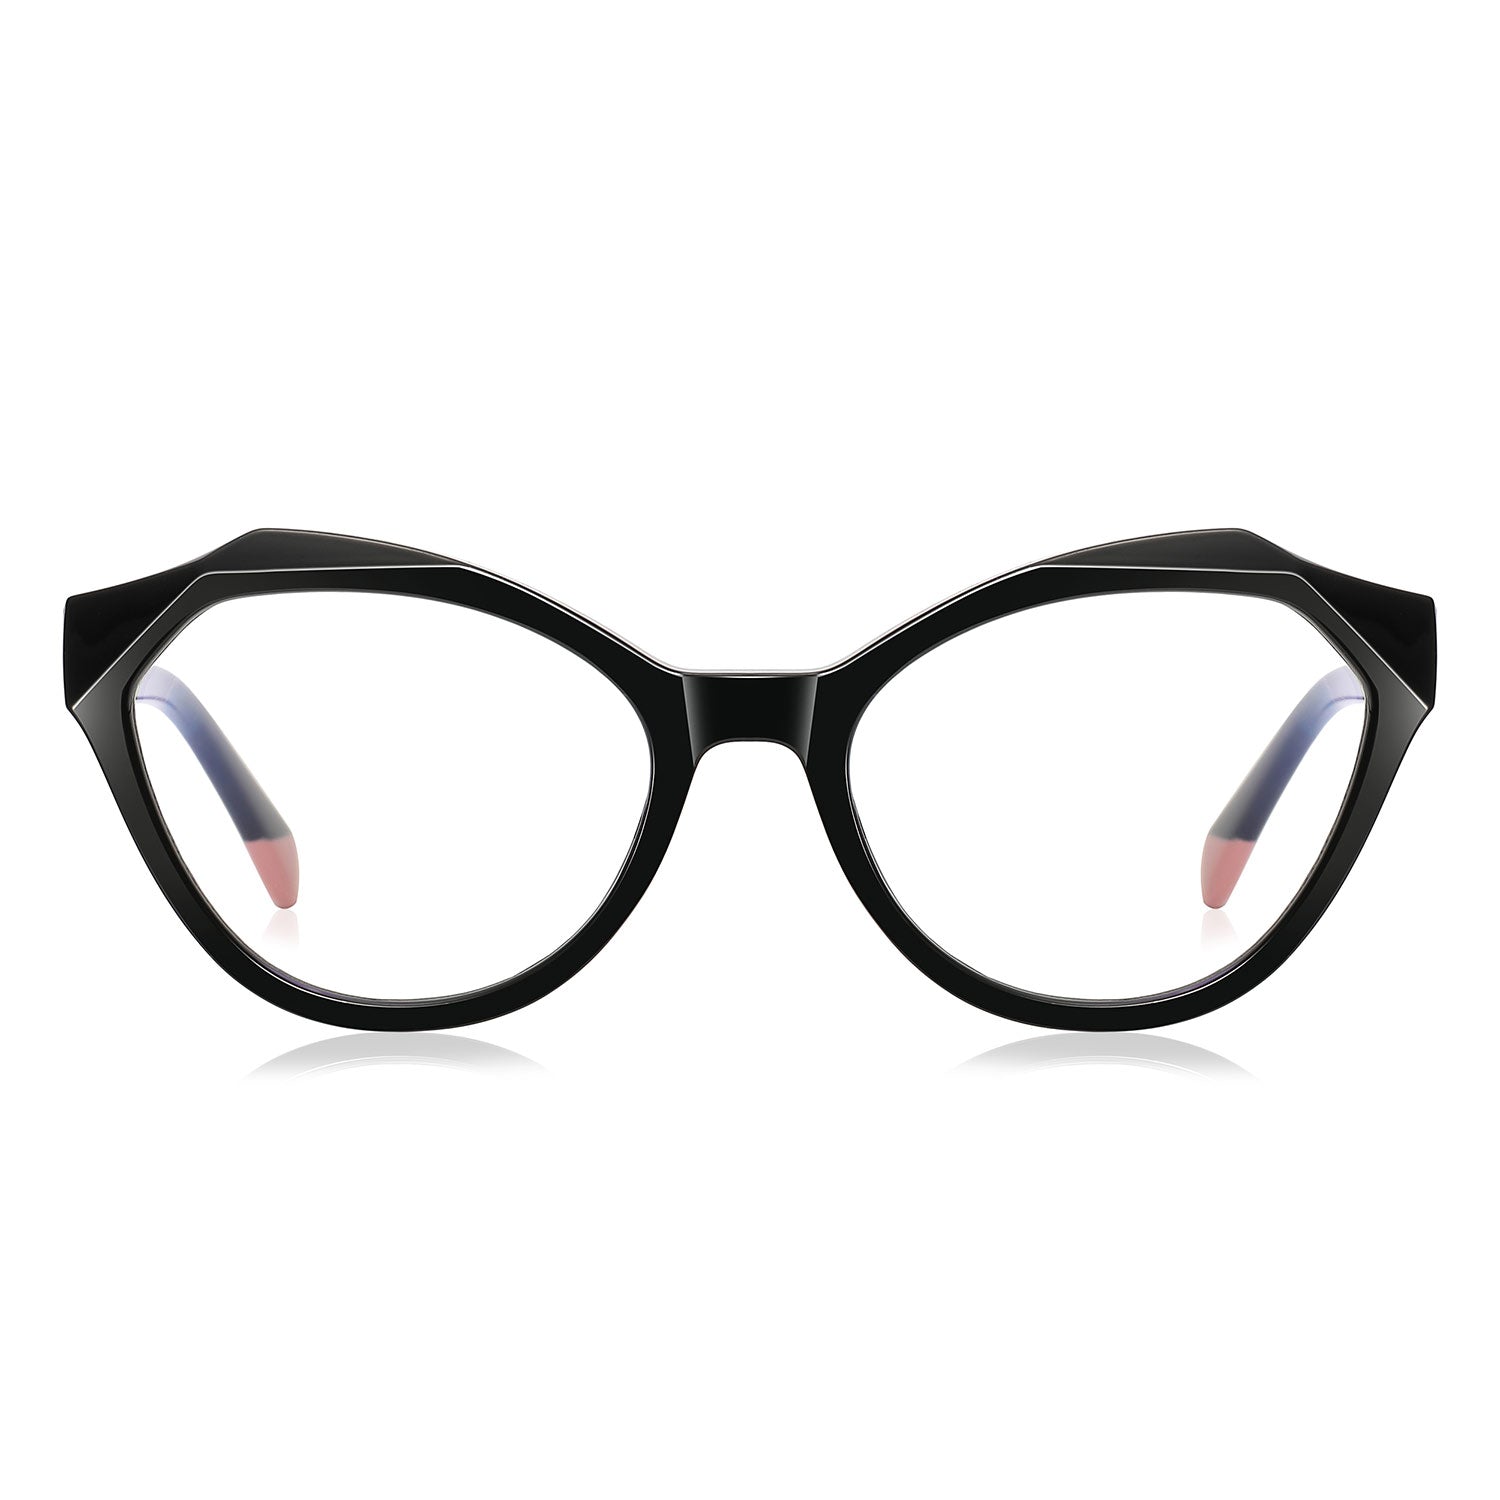 Bias | Cat Eye/Black/TR90 - Eyeglasses | ELKLOOK